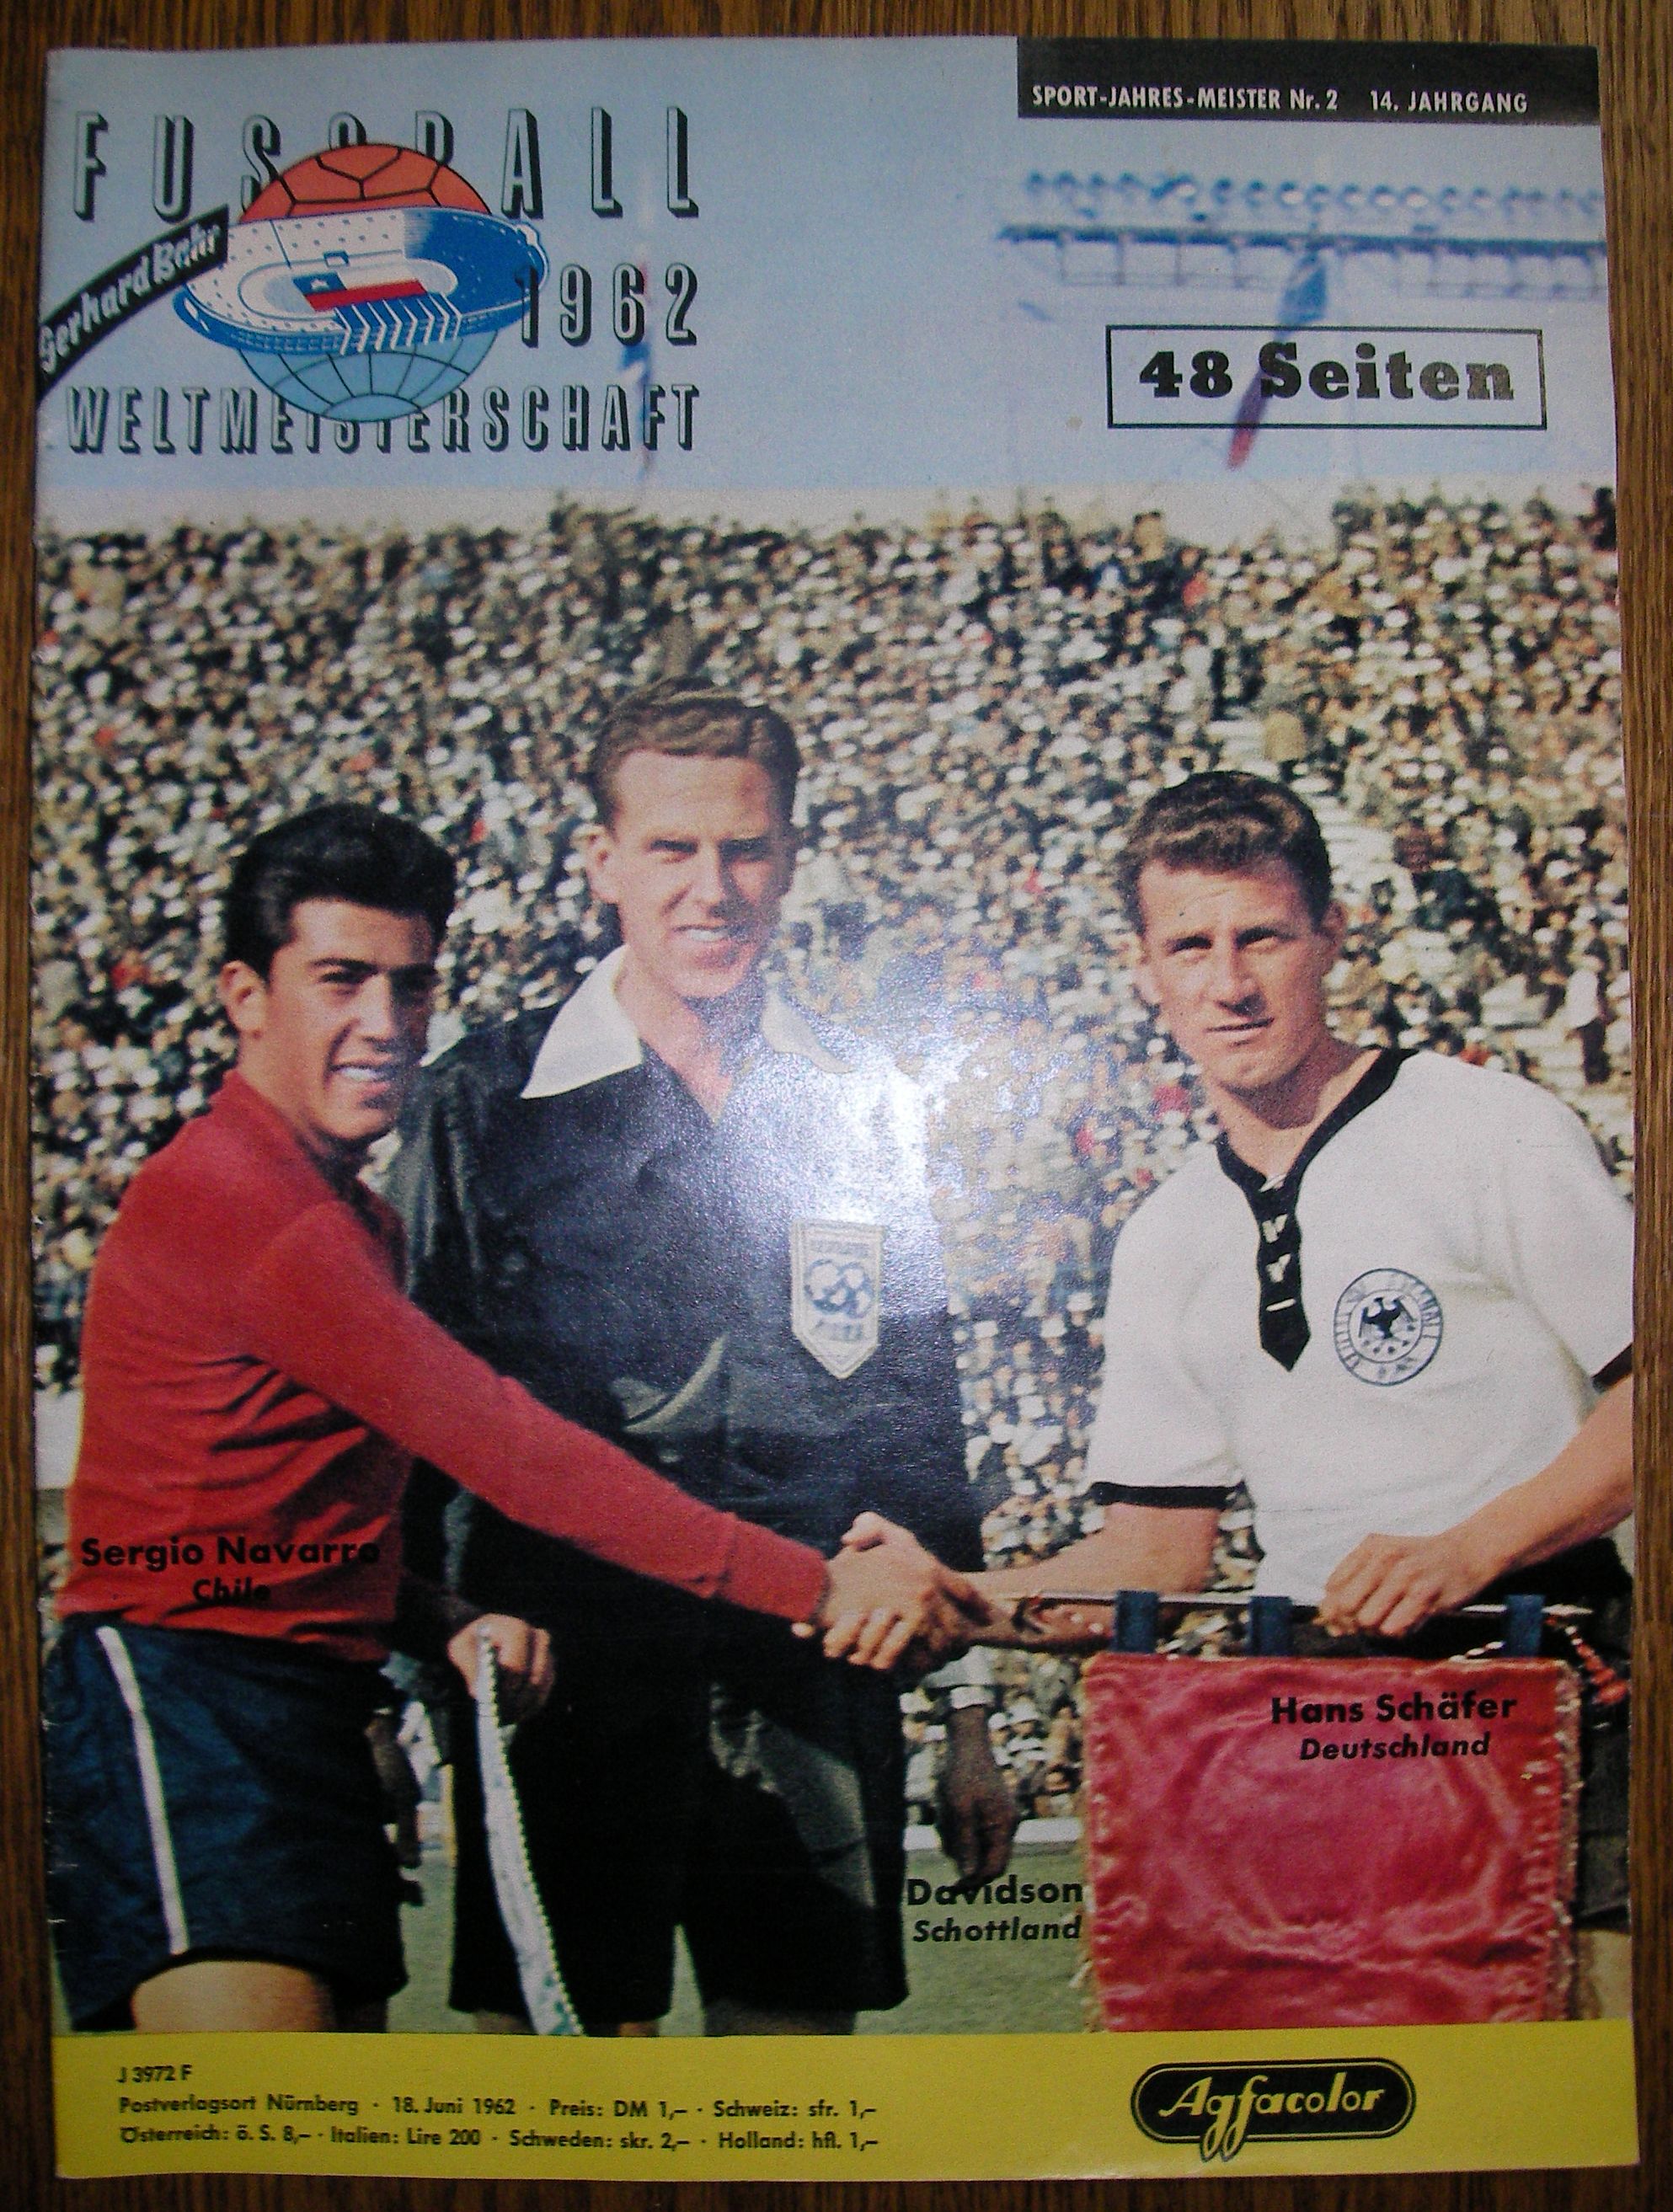 Bahr, Gerhard [Hrsg.]:   Sport-Jahres-Meister, Fussball-Weltmeisterschaft 1962 (Chile). 